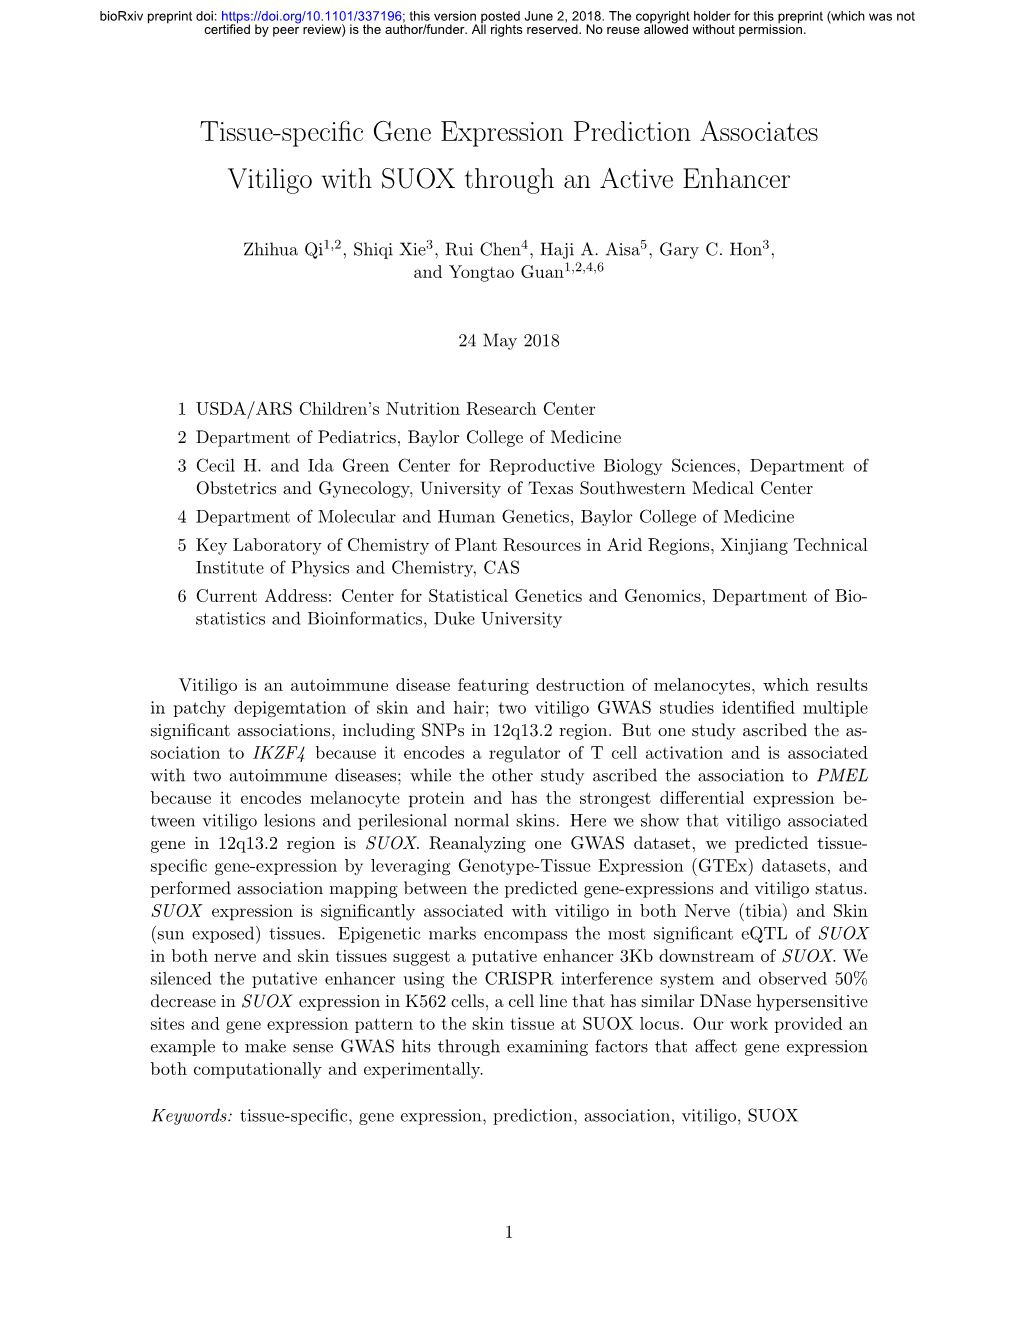 Tissue-Specific Gene Expression Prediction Associates Vitiligo With